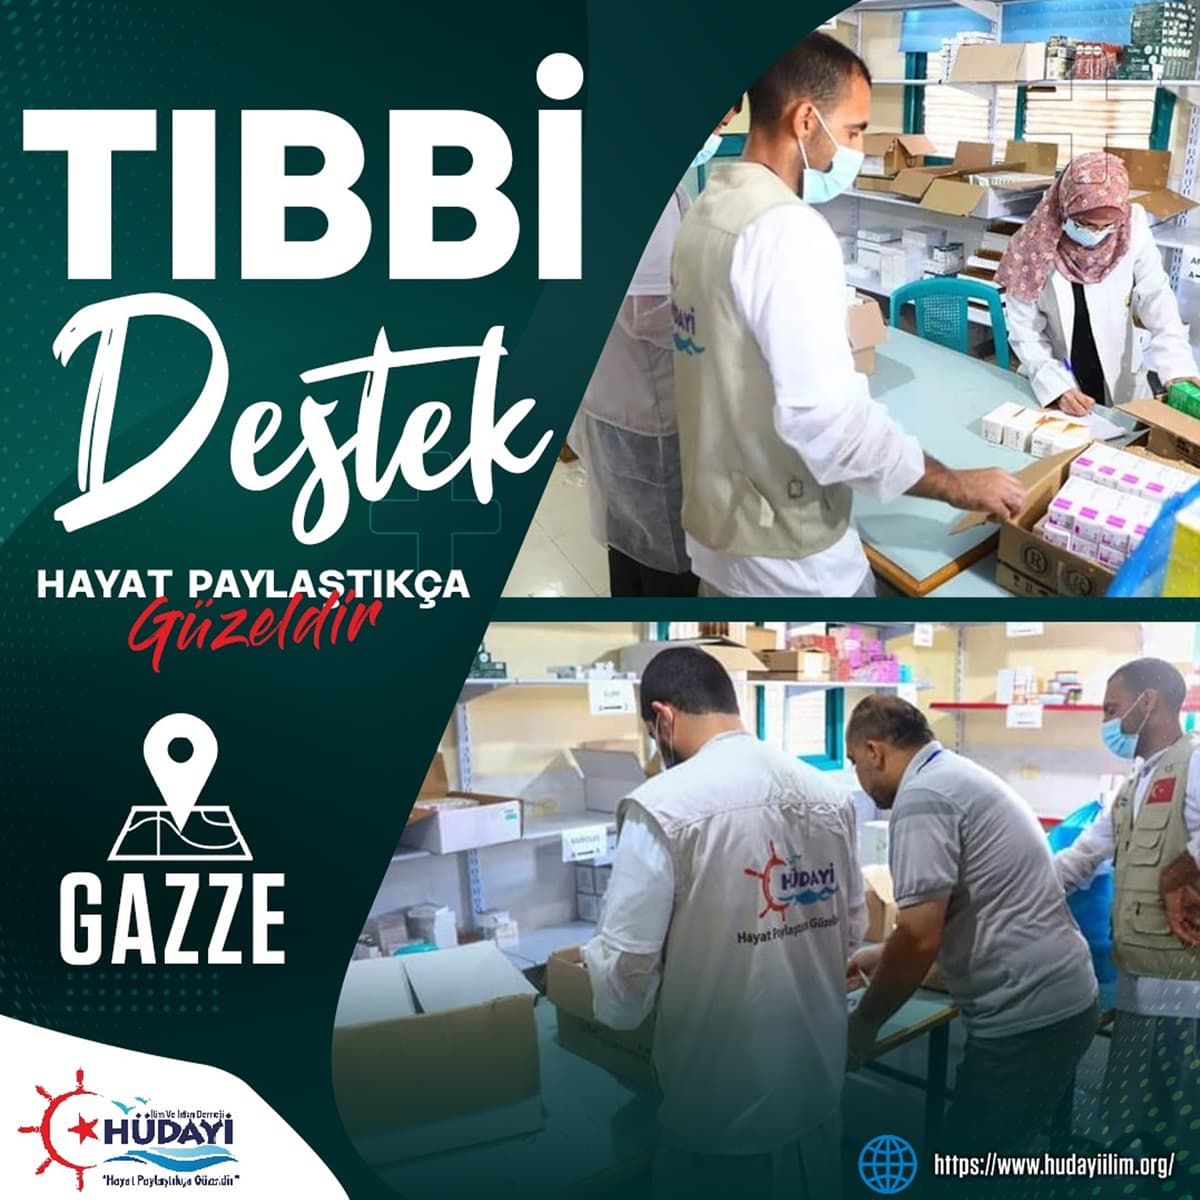 Gazze'ye Tıbbi Destek